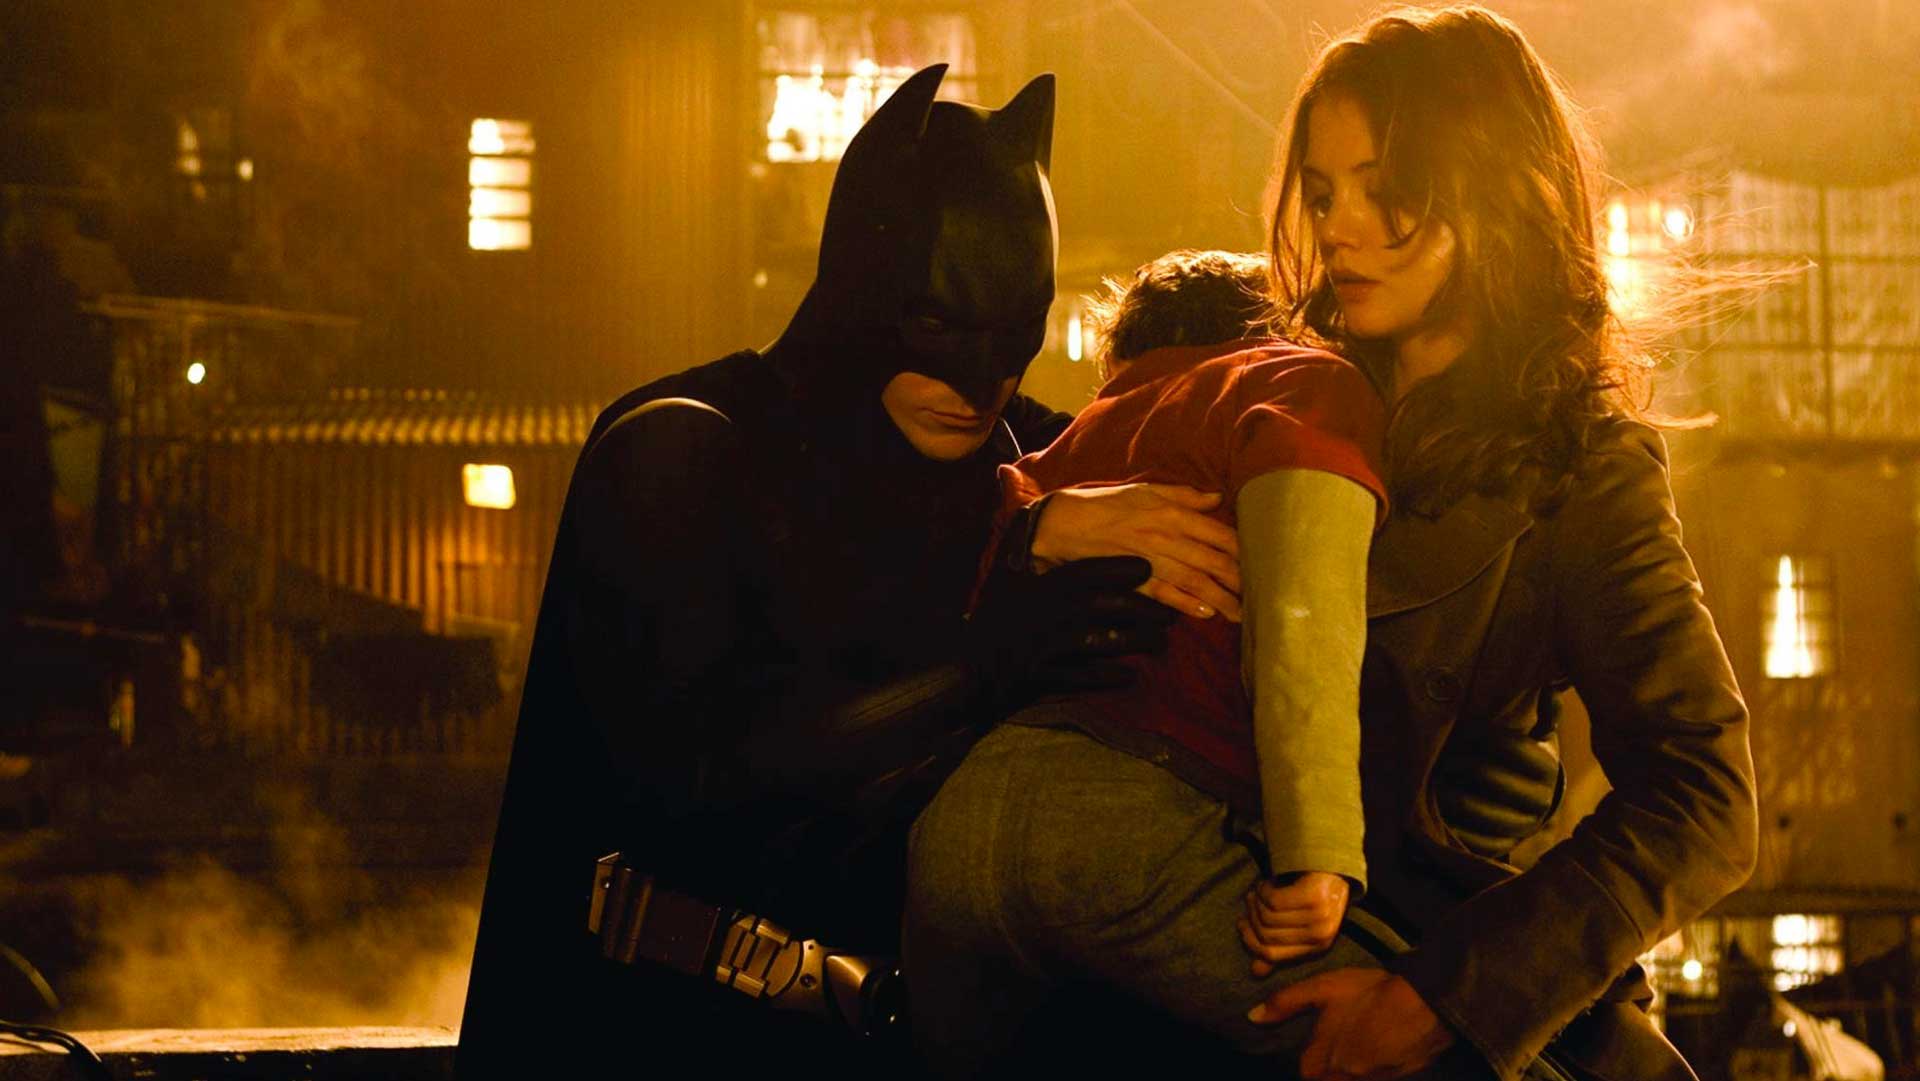 نجات کودک در فیلم Batman Begins (بتمن آغاز می‌کند) نولان، یکی از بهترین فیلم های ابرقهرمانی تاریخ سینما